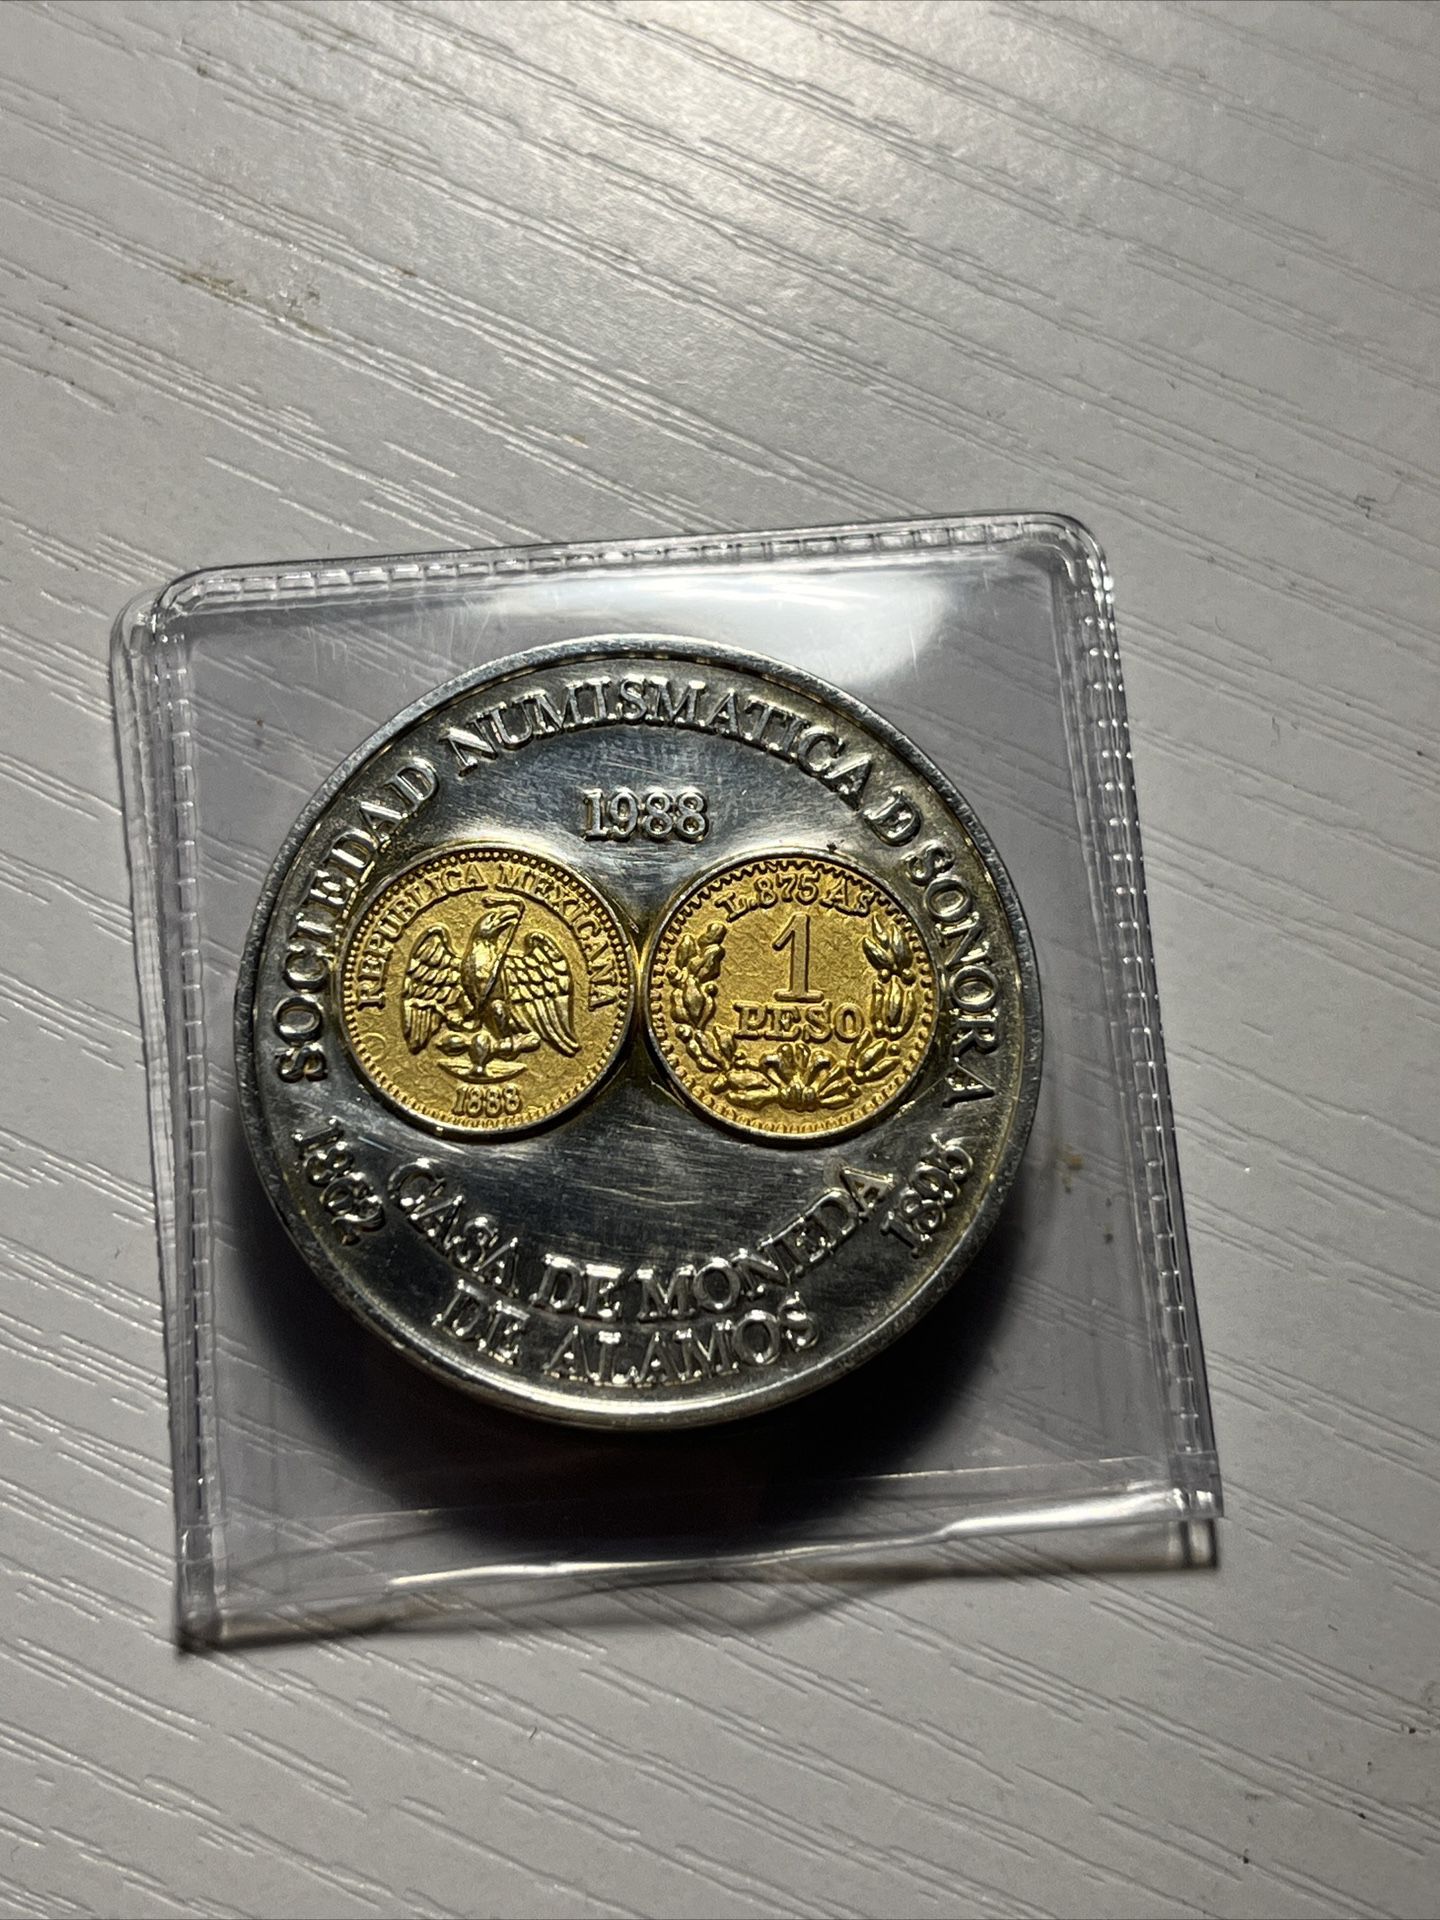 1988 Sociedad Numismatica De Sonora Coin